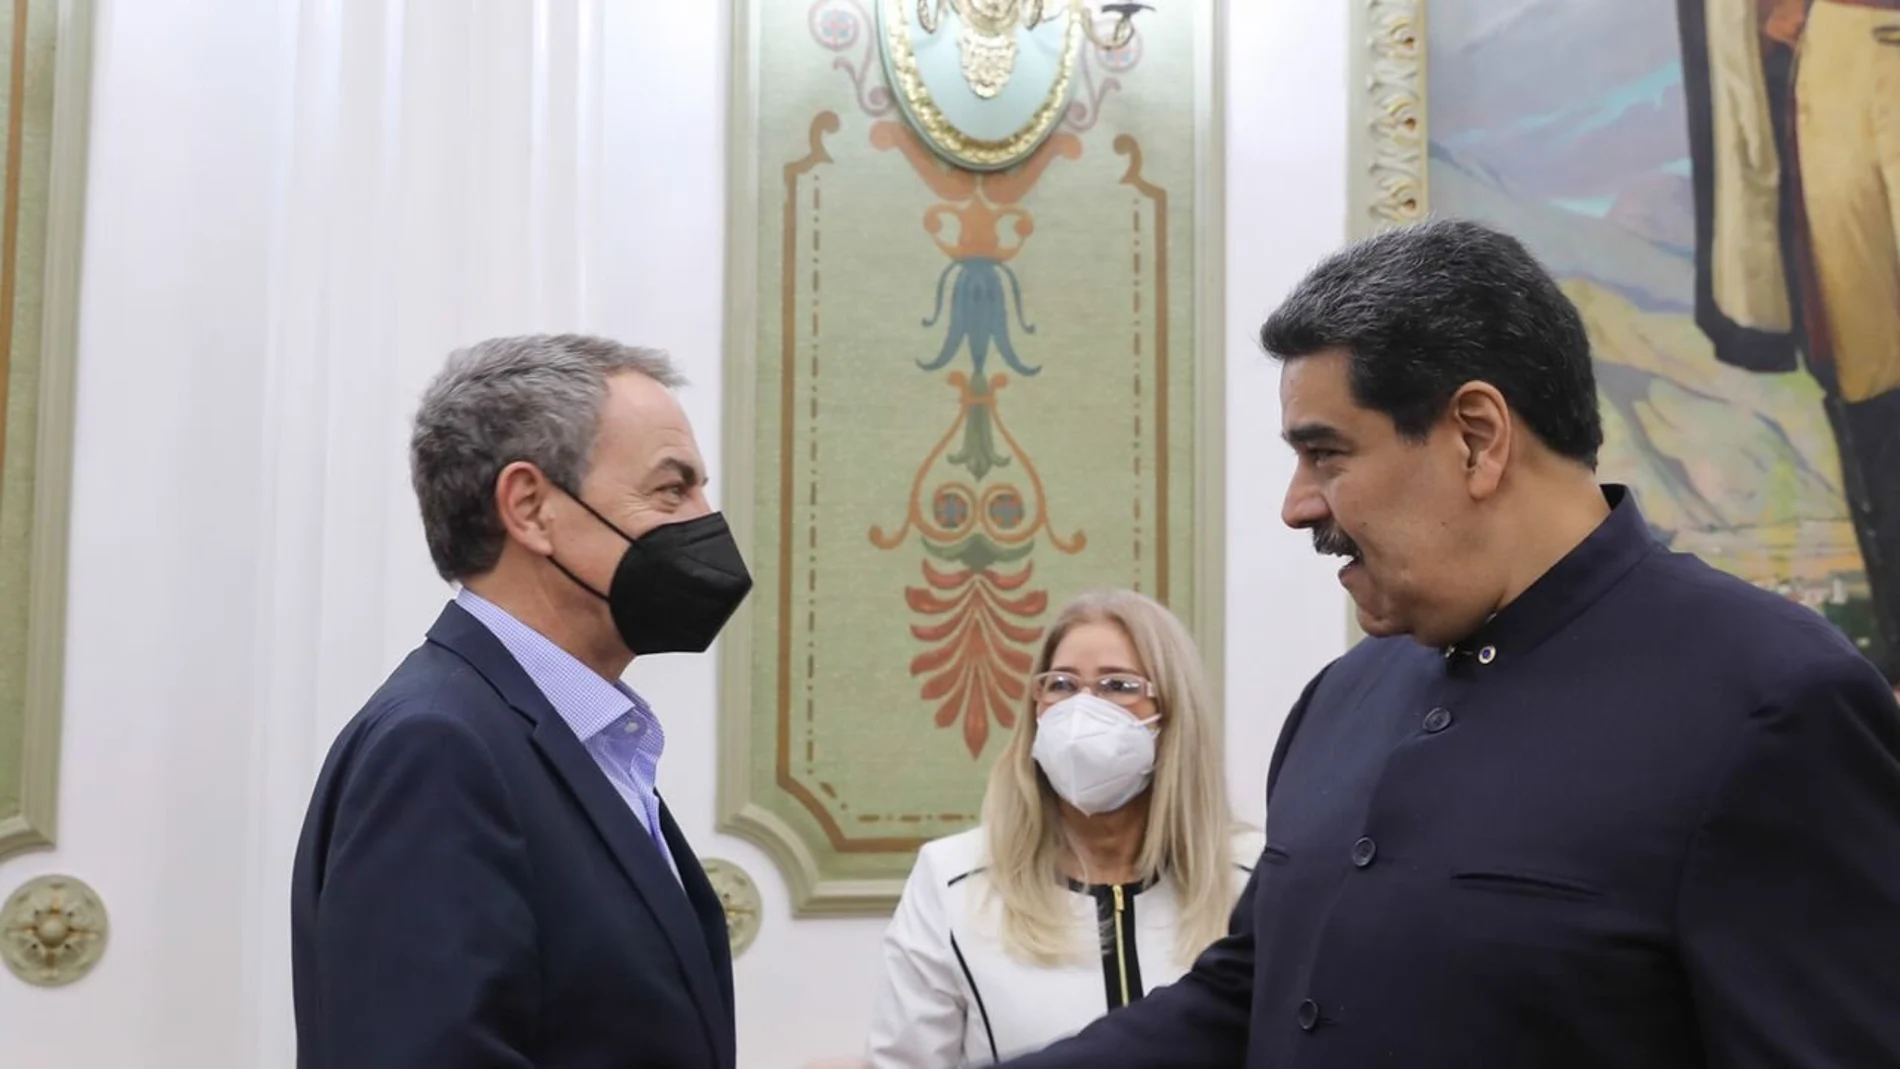 Zapatero se reúne con Maduro en el día de las elecciones regionales y locales de Venezuela